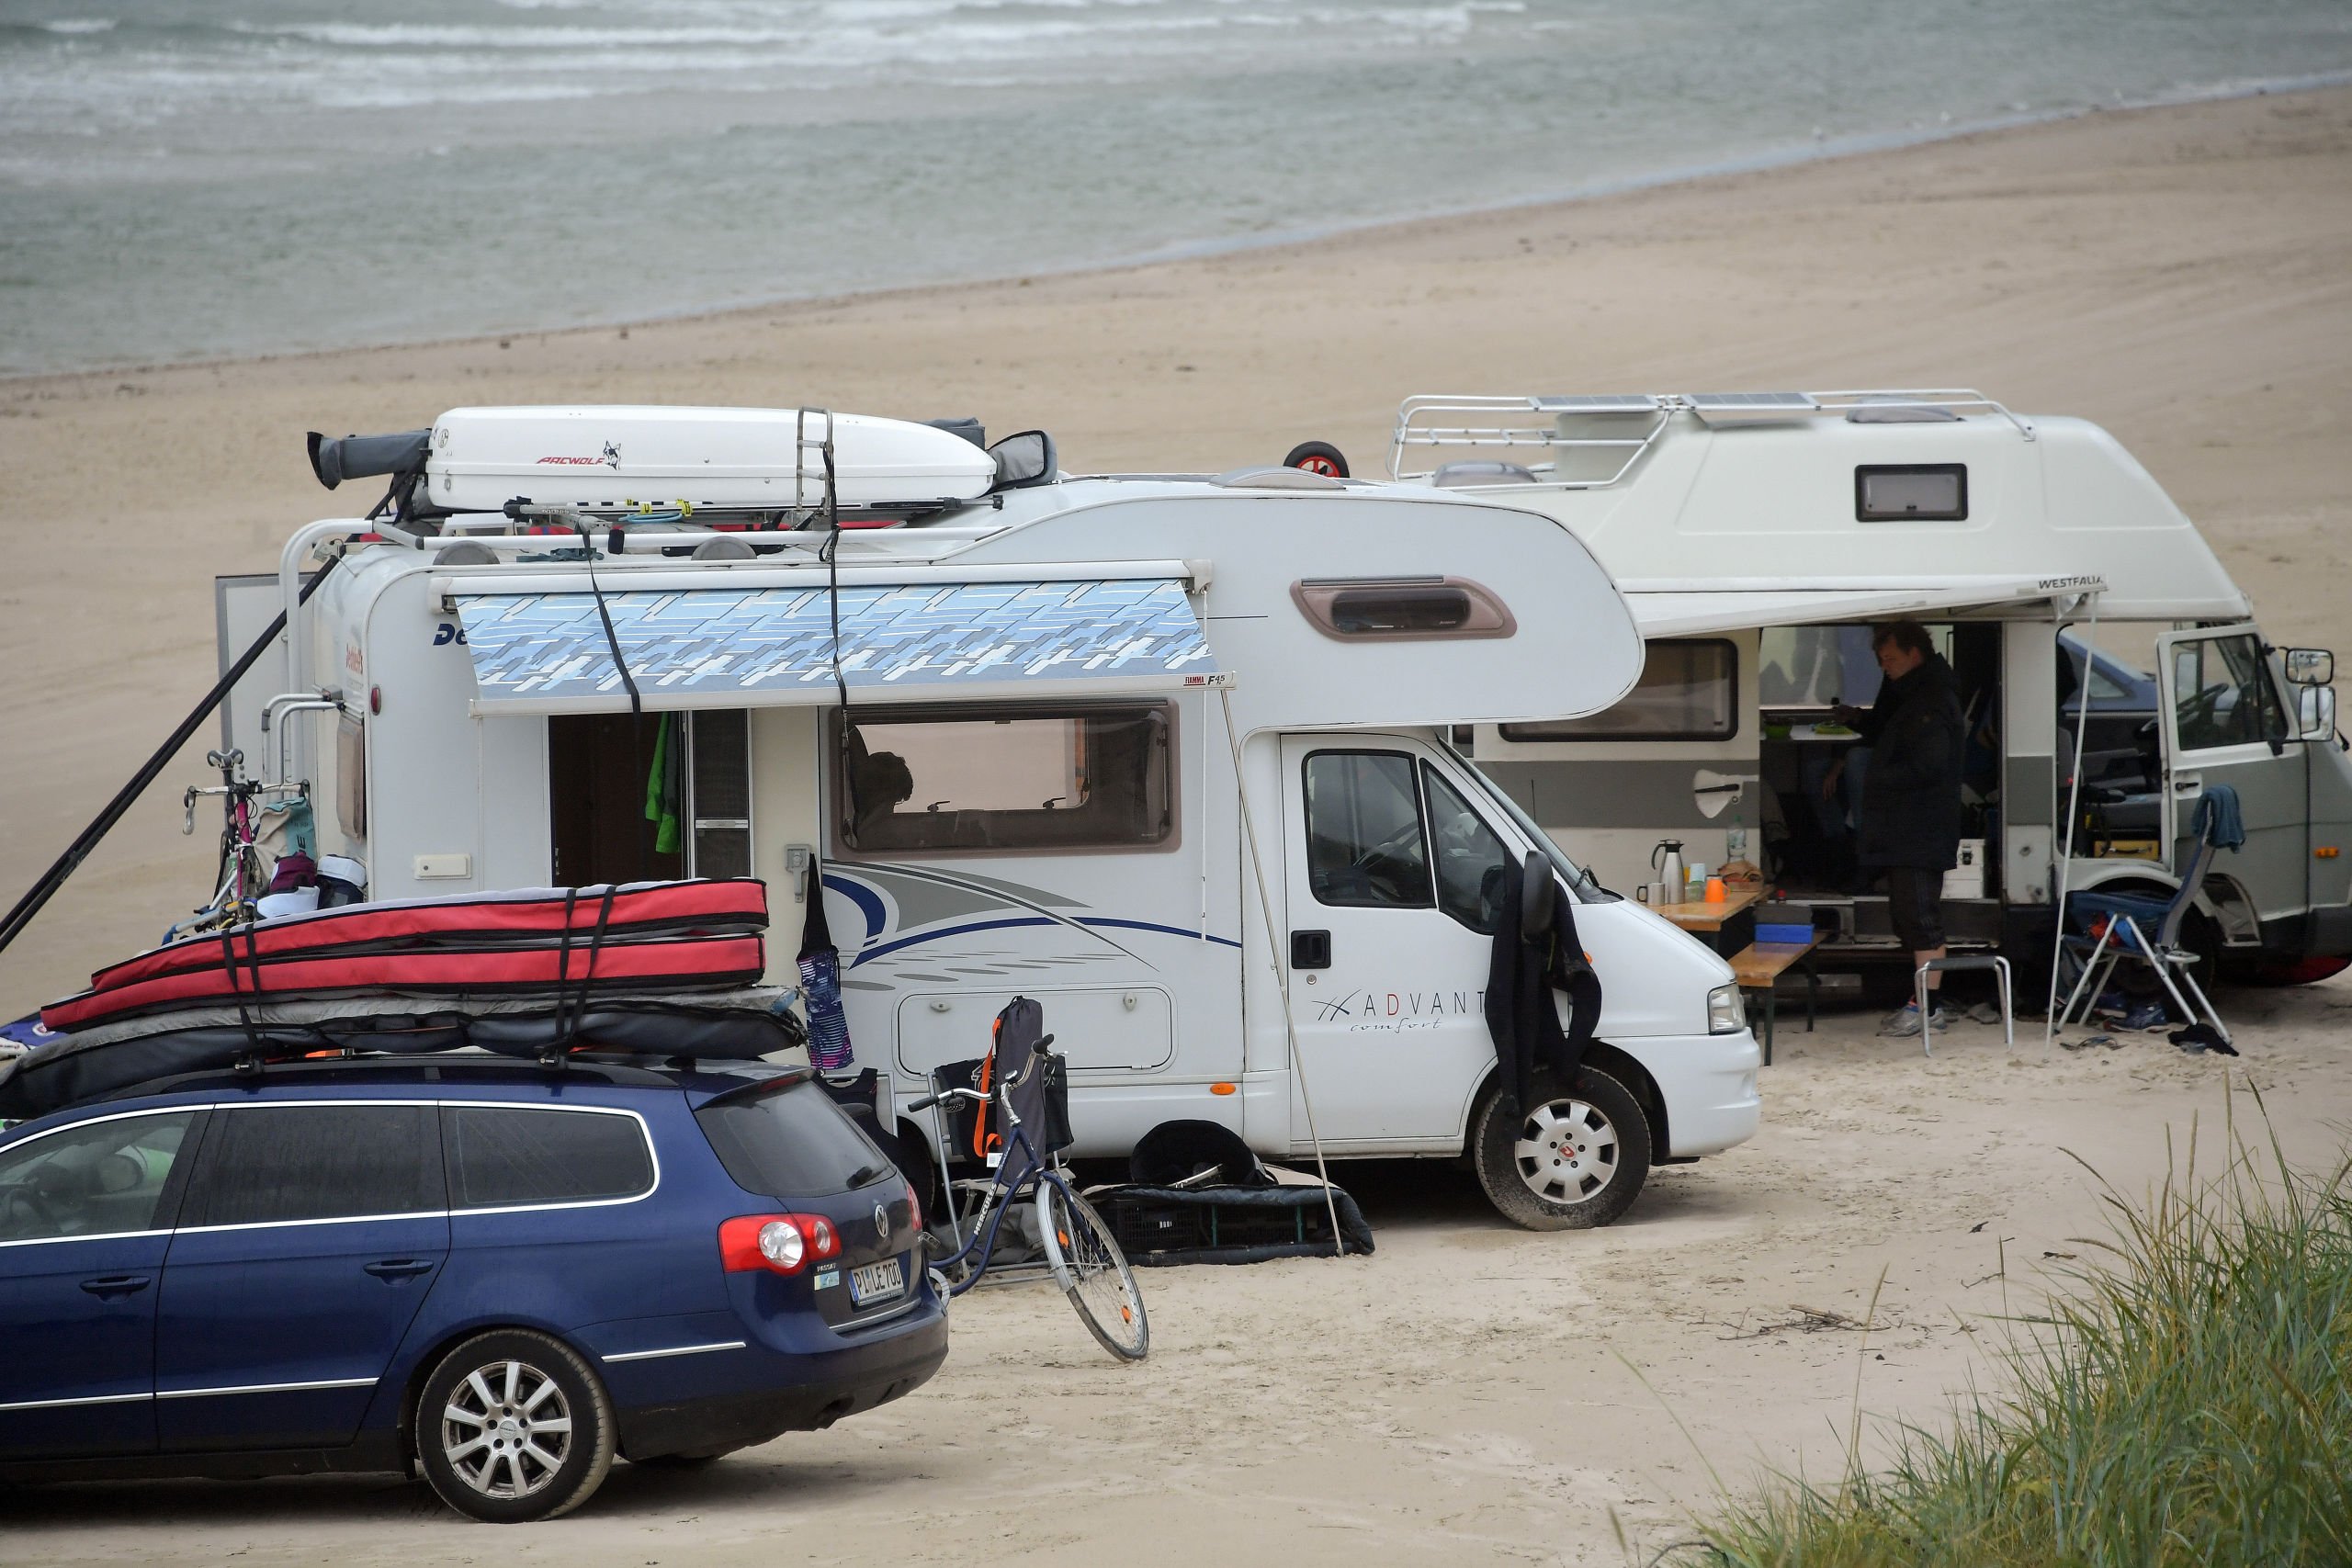 Strid om autocampere: Kommune må acceptere overnatning på stranden - men kræver nye regler